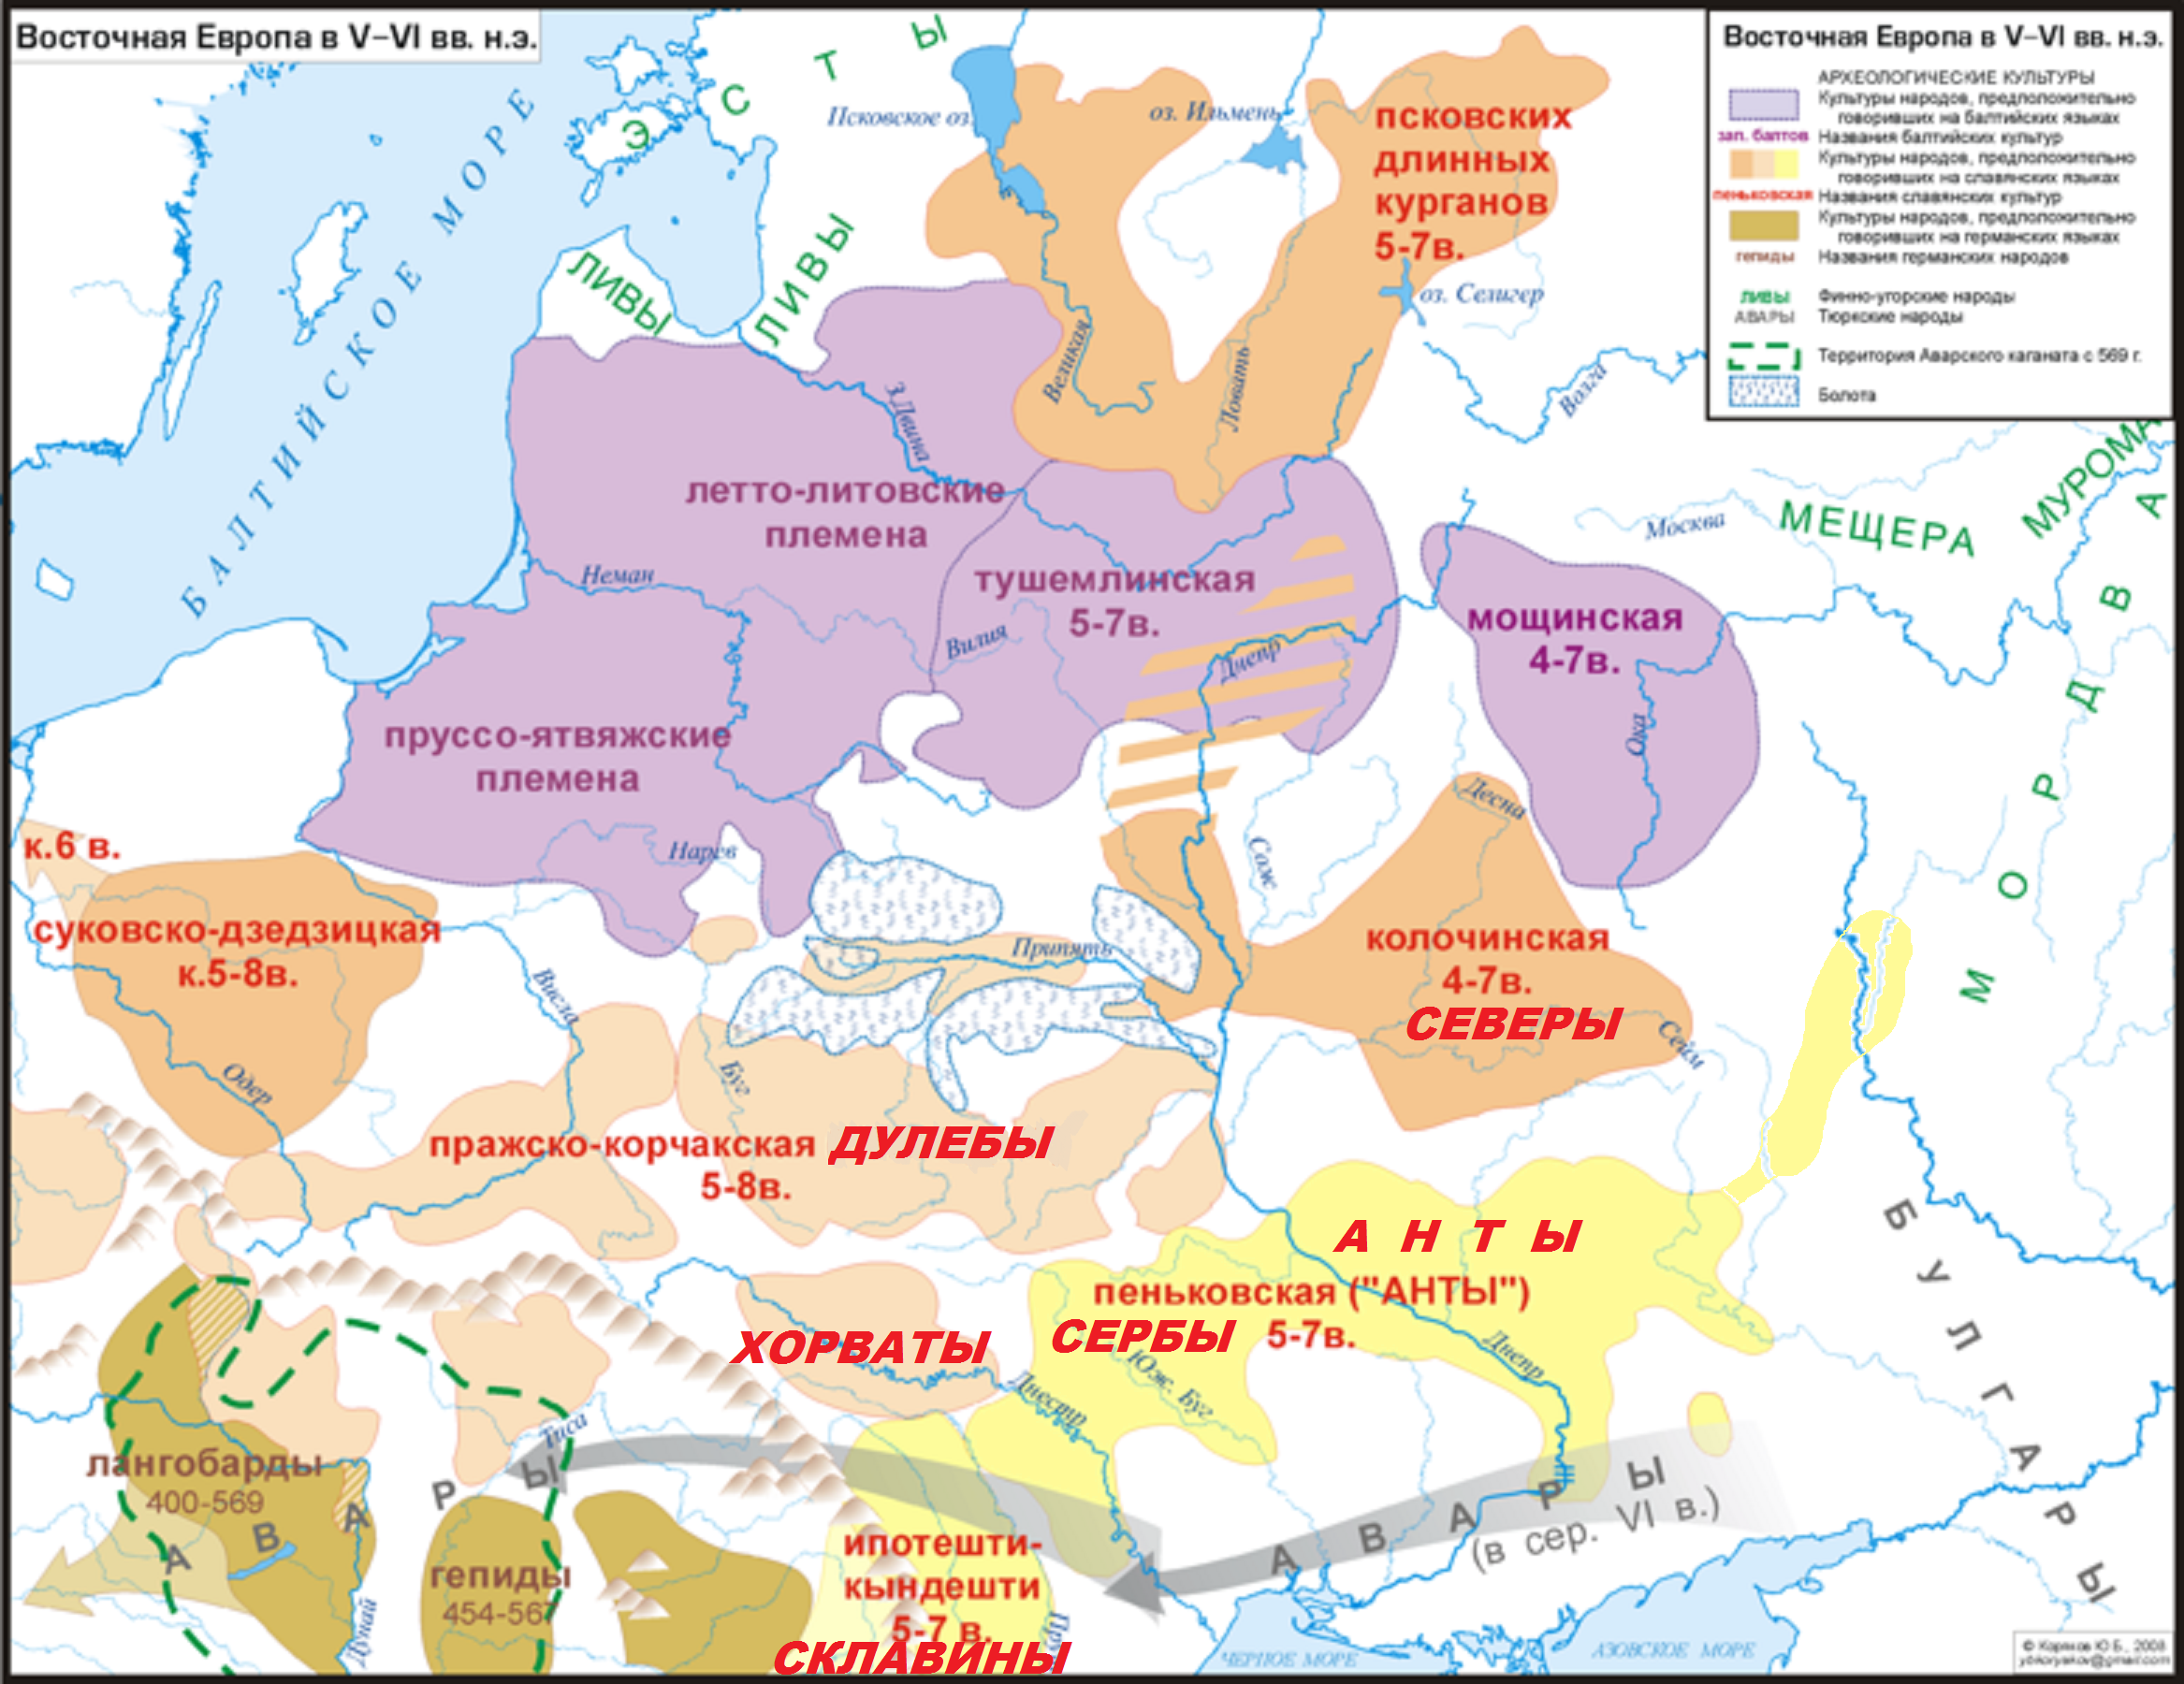 Аварское вторжение на территорию Восточной Европы на основе карты Ю. Корякова